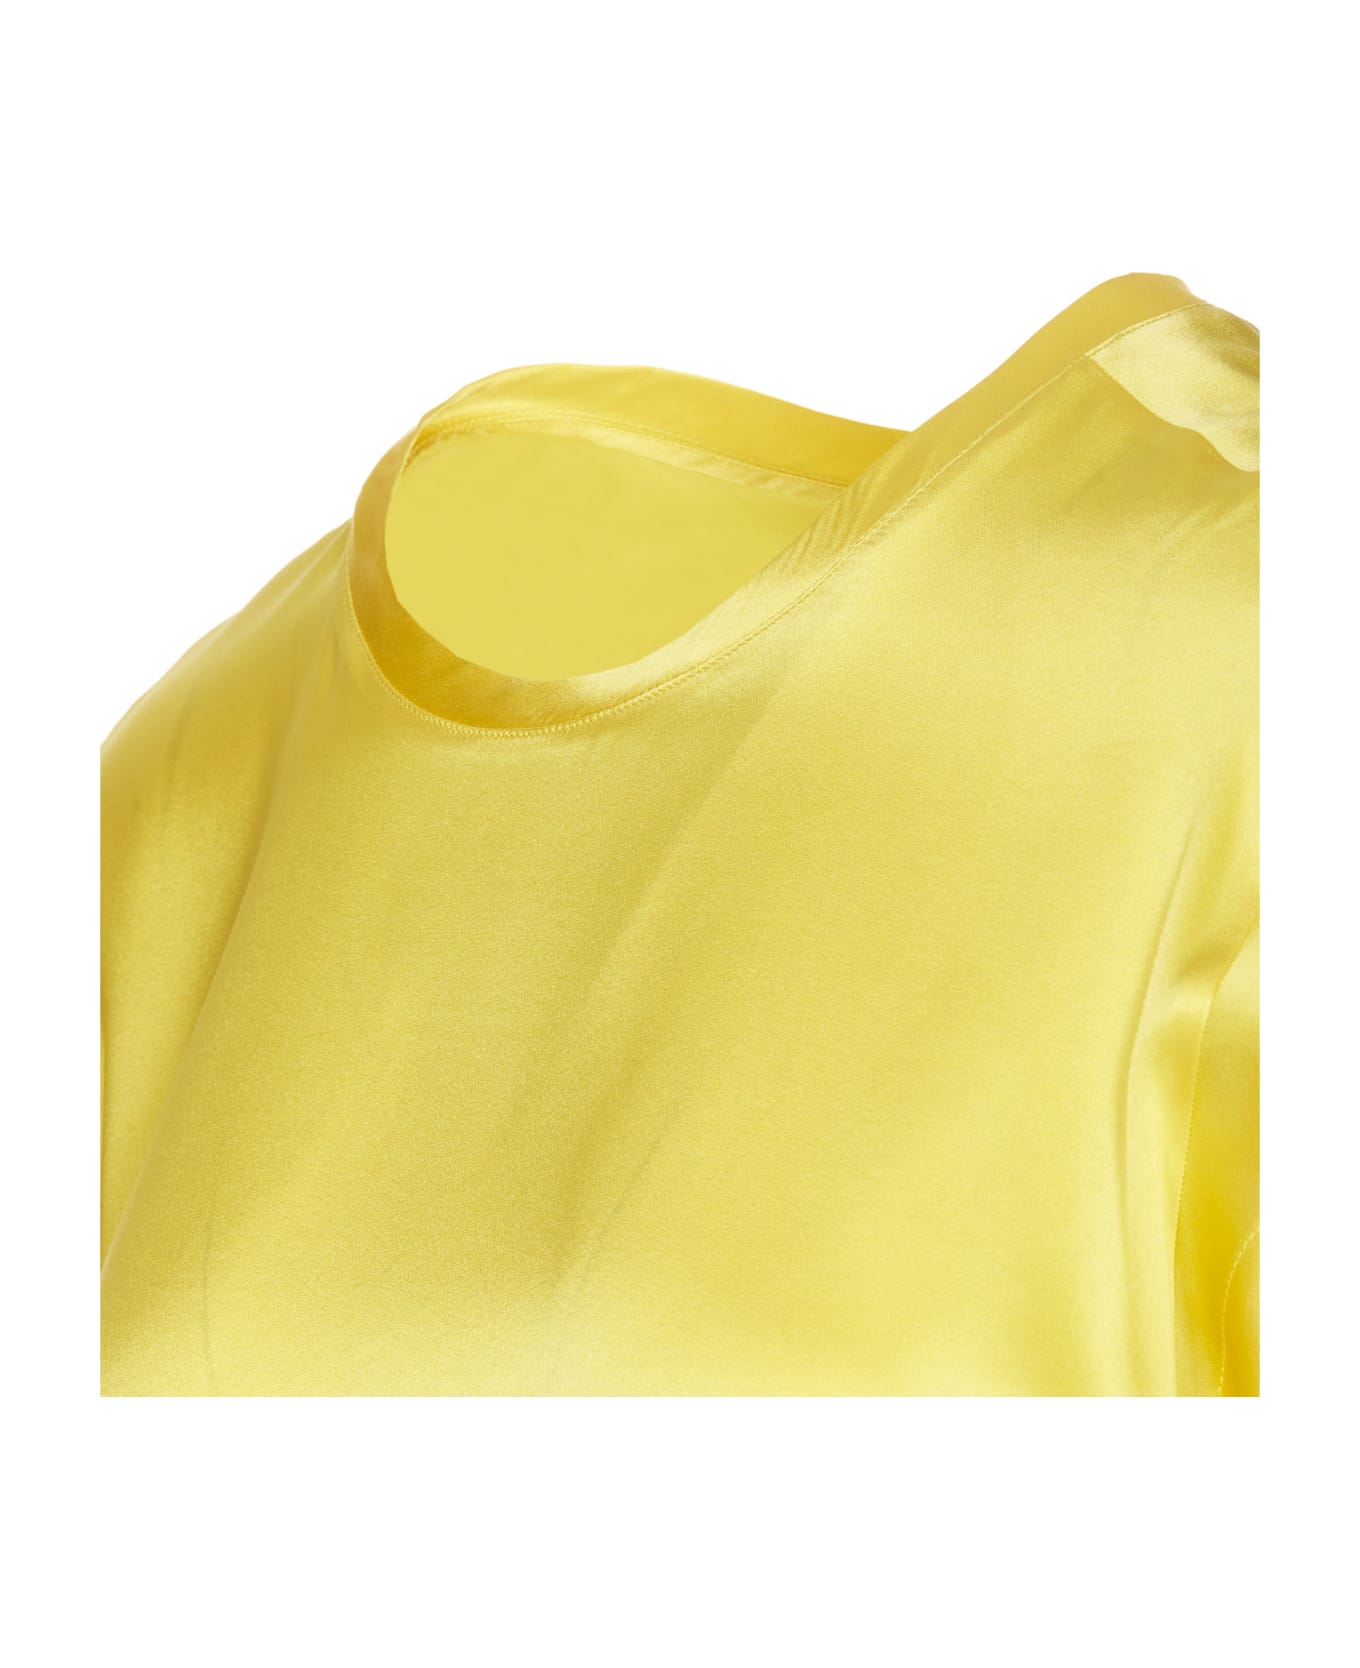 Pinko Satin Mesh - Yellow Tシャツ